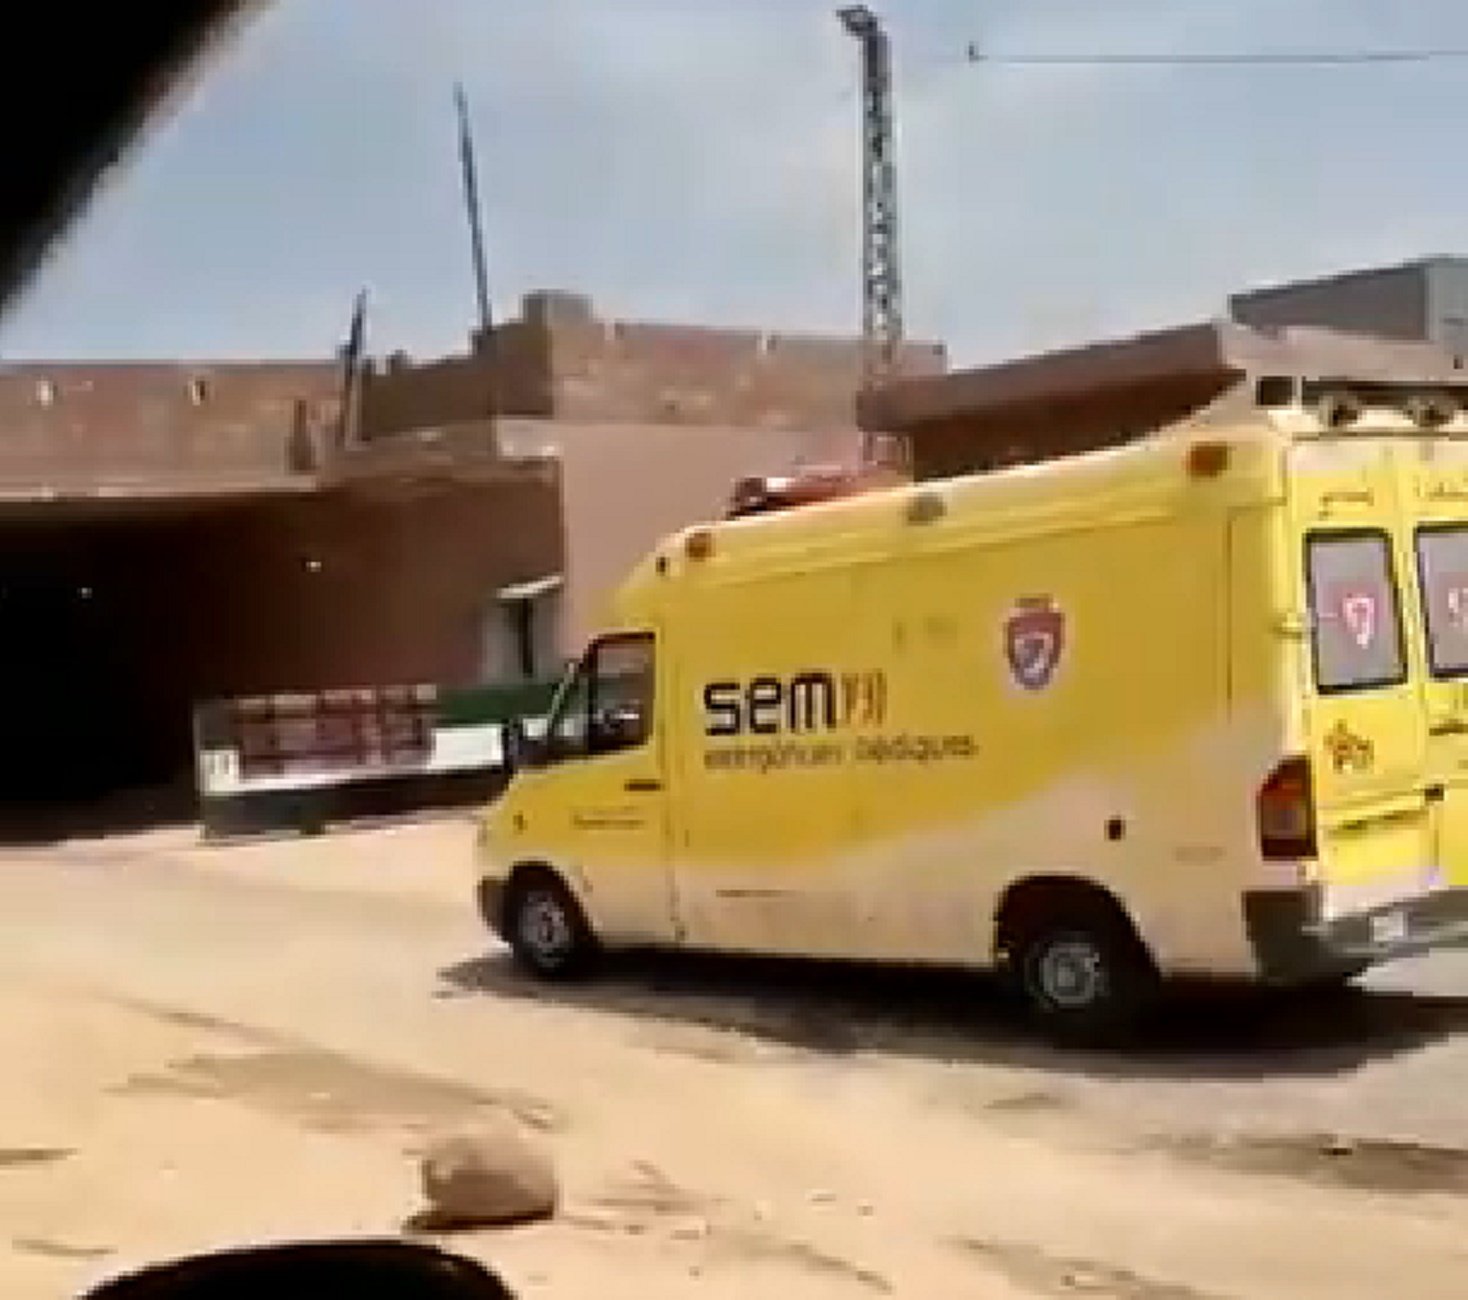 VÍDEO | ¿Qué hace una ambulancia del SEM evacuando militares turcos en Siria?